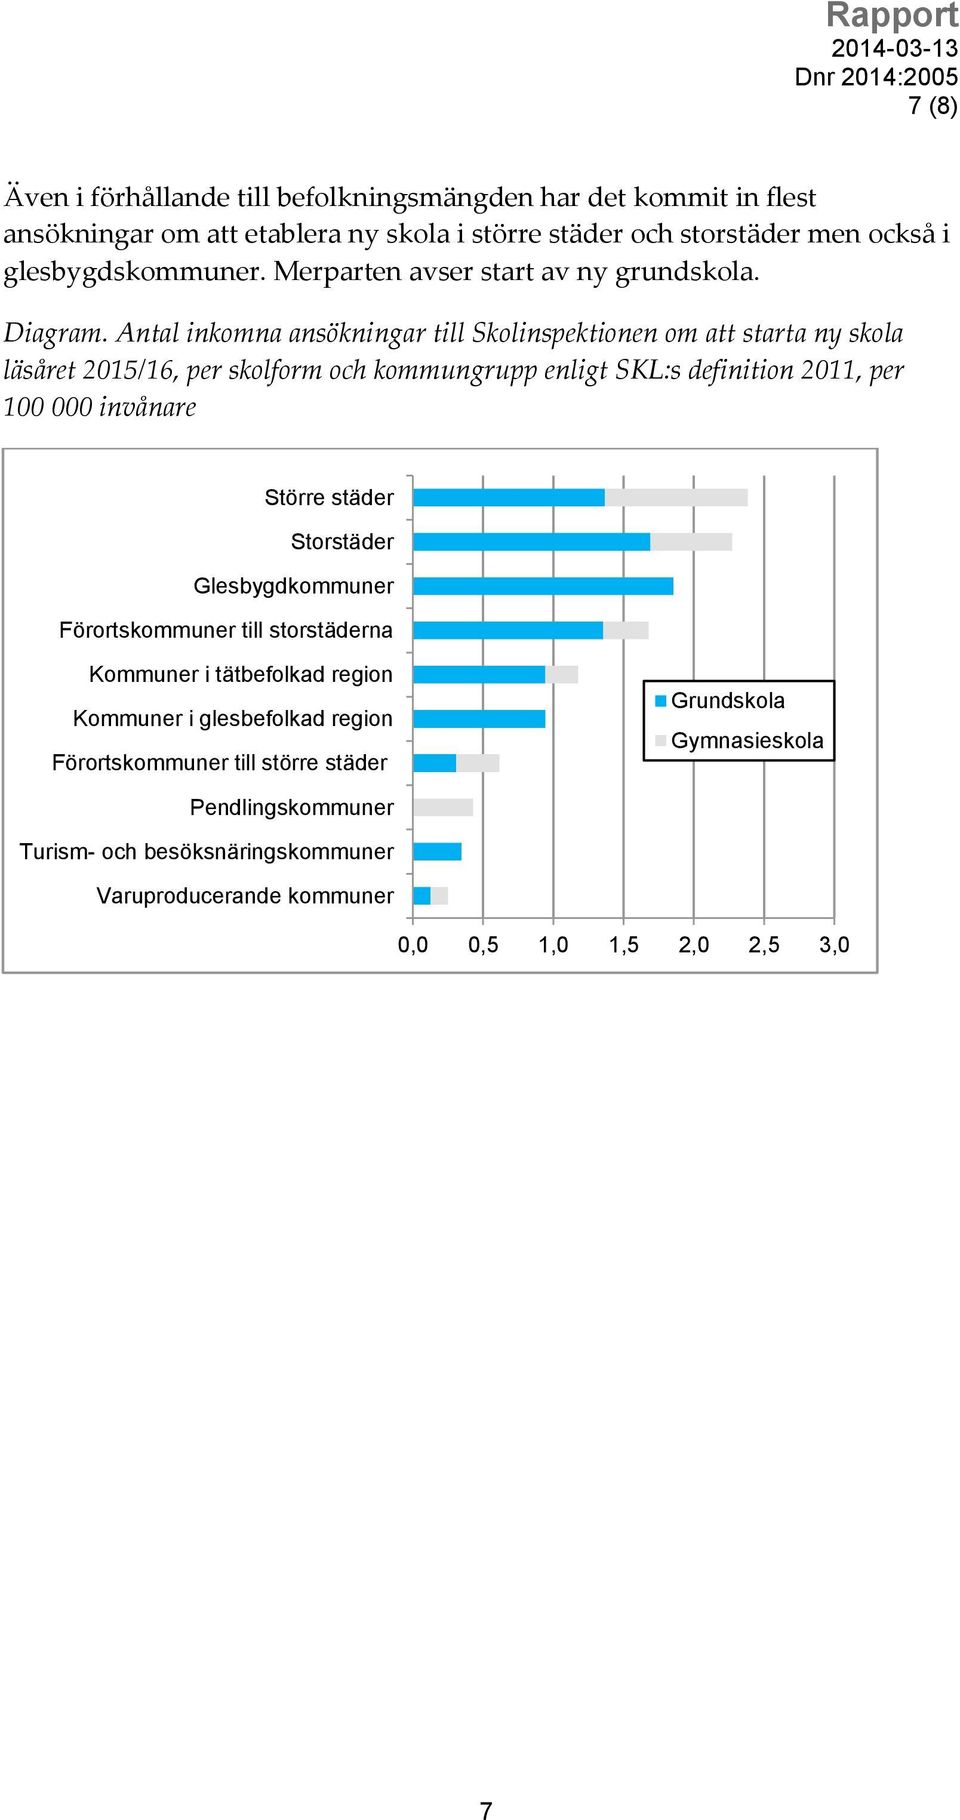 Antal inkomna ansökningar till Skolinspektionen om att starta ny skola läsåret 2015/16, per skolform och kommungrupp enligt SKL:s definition 2011, per 100 000 invånare